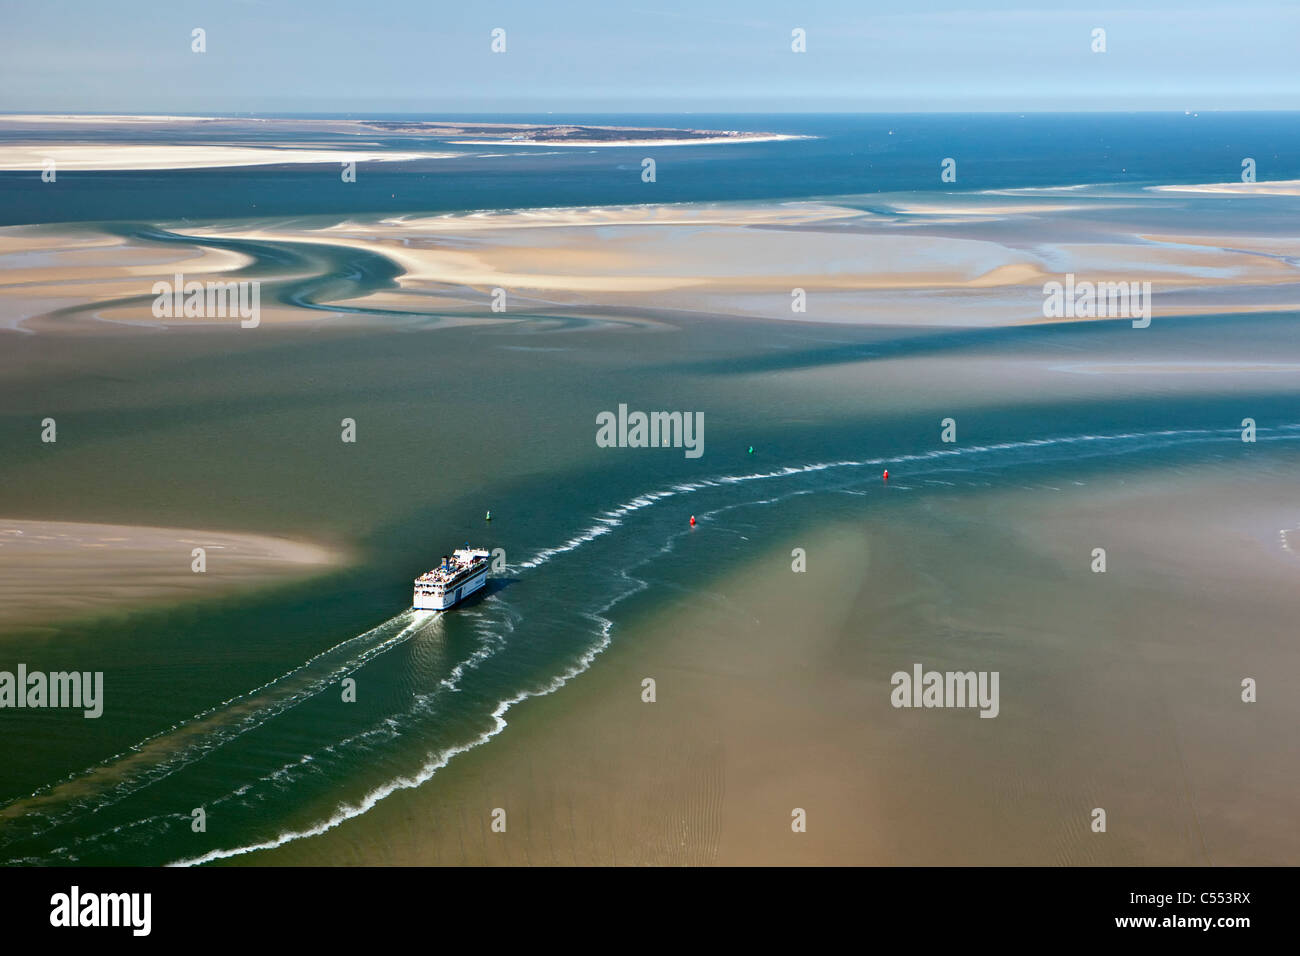 Niederlande, Insel Terschelling, Gruppe von Inseln genannt Wattenmeer. UNESCO-Weltkulturerbe. Bei Ebbe. Fähre. Luft. Stockfoto